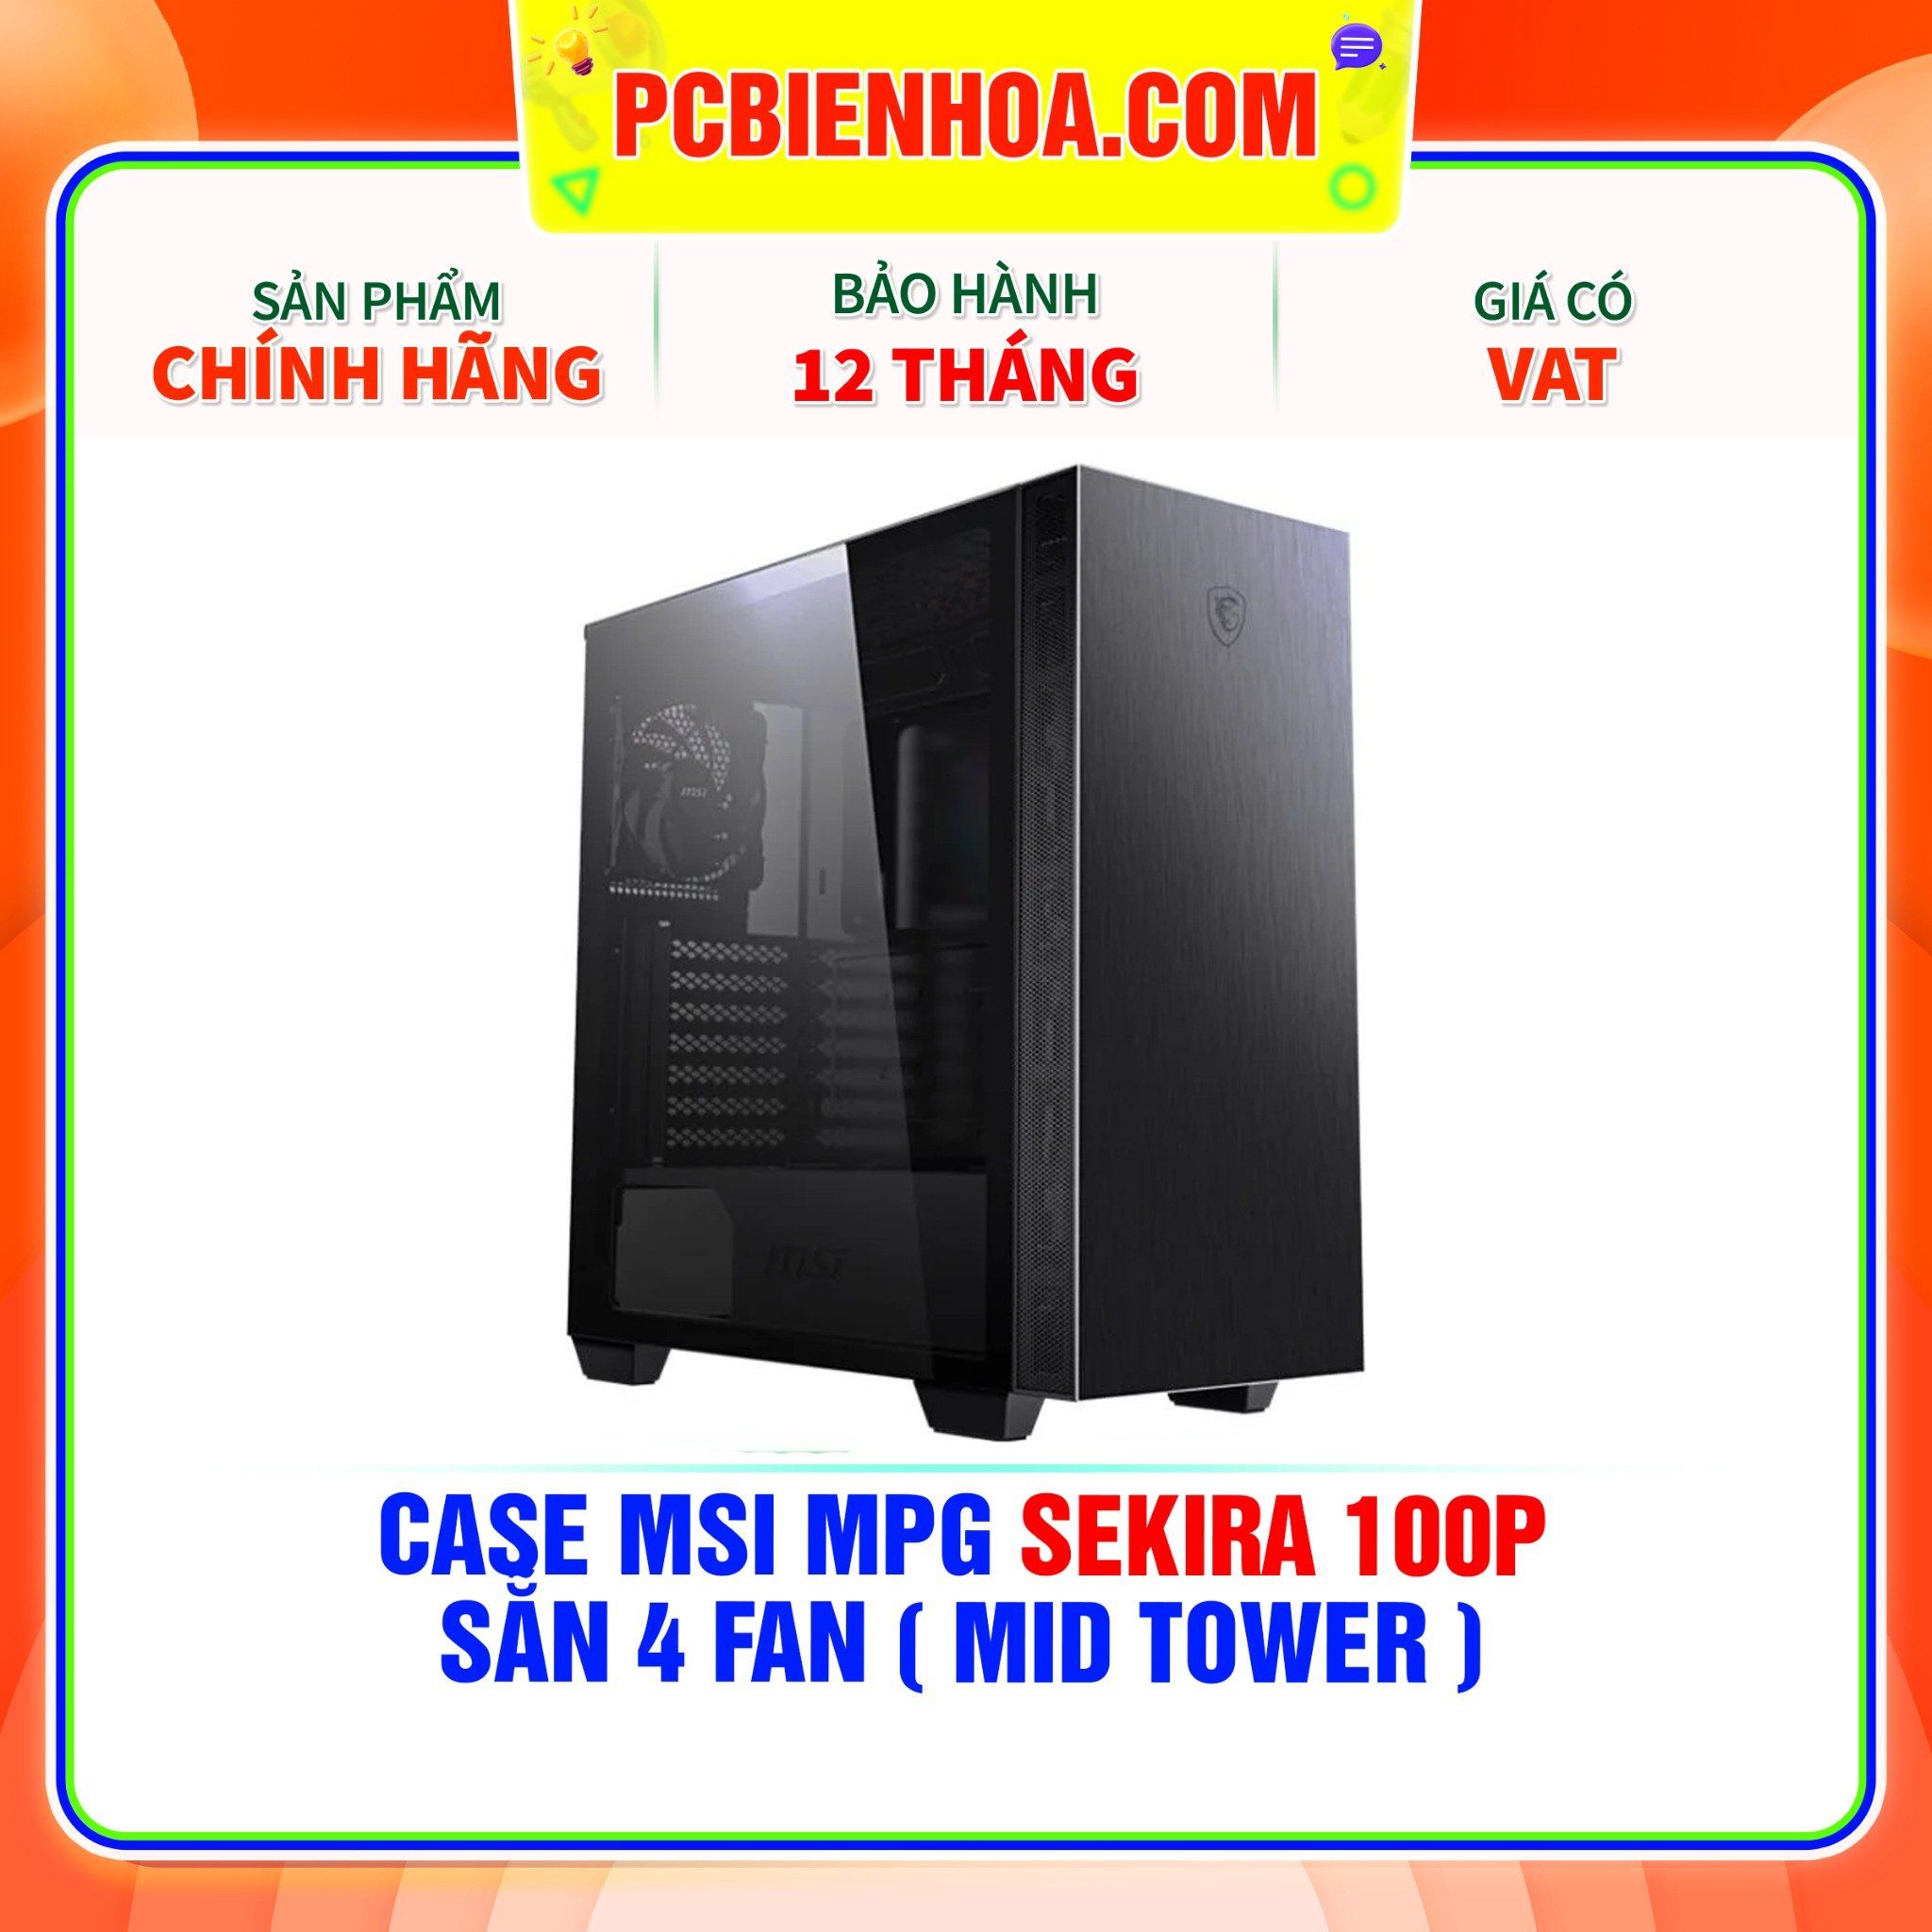  CASE MSI MPG SEKIRA 100P - SẴN 4 FAN ( MID TOWER ) 